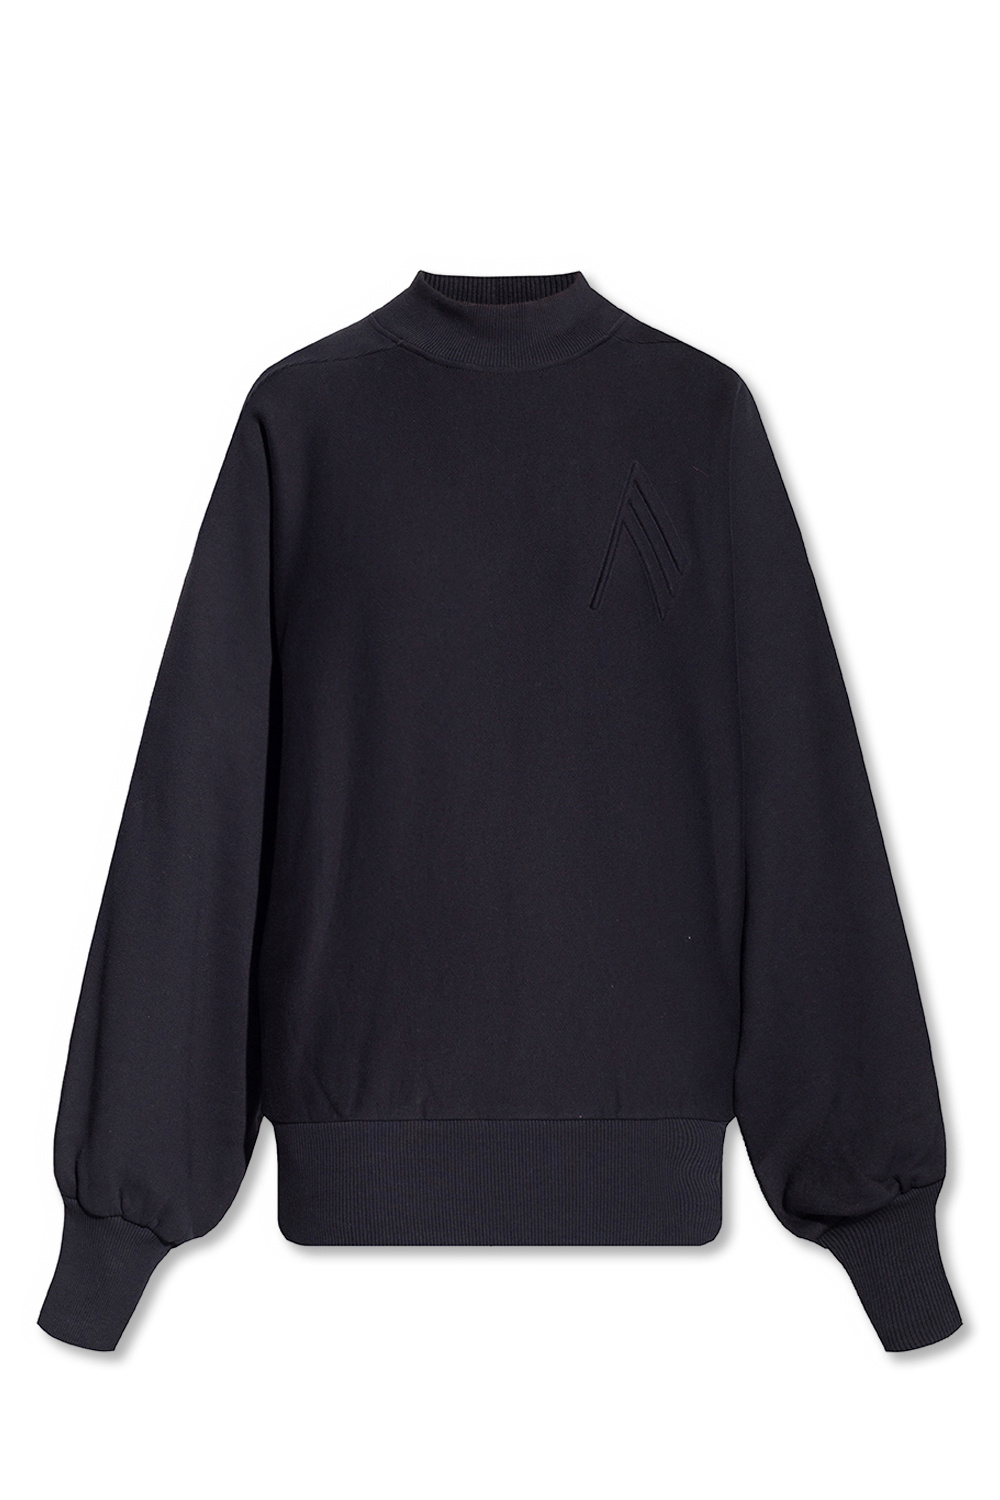 The Attico ‘Felpa’ Multi sweatshirt